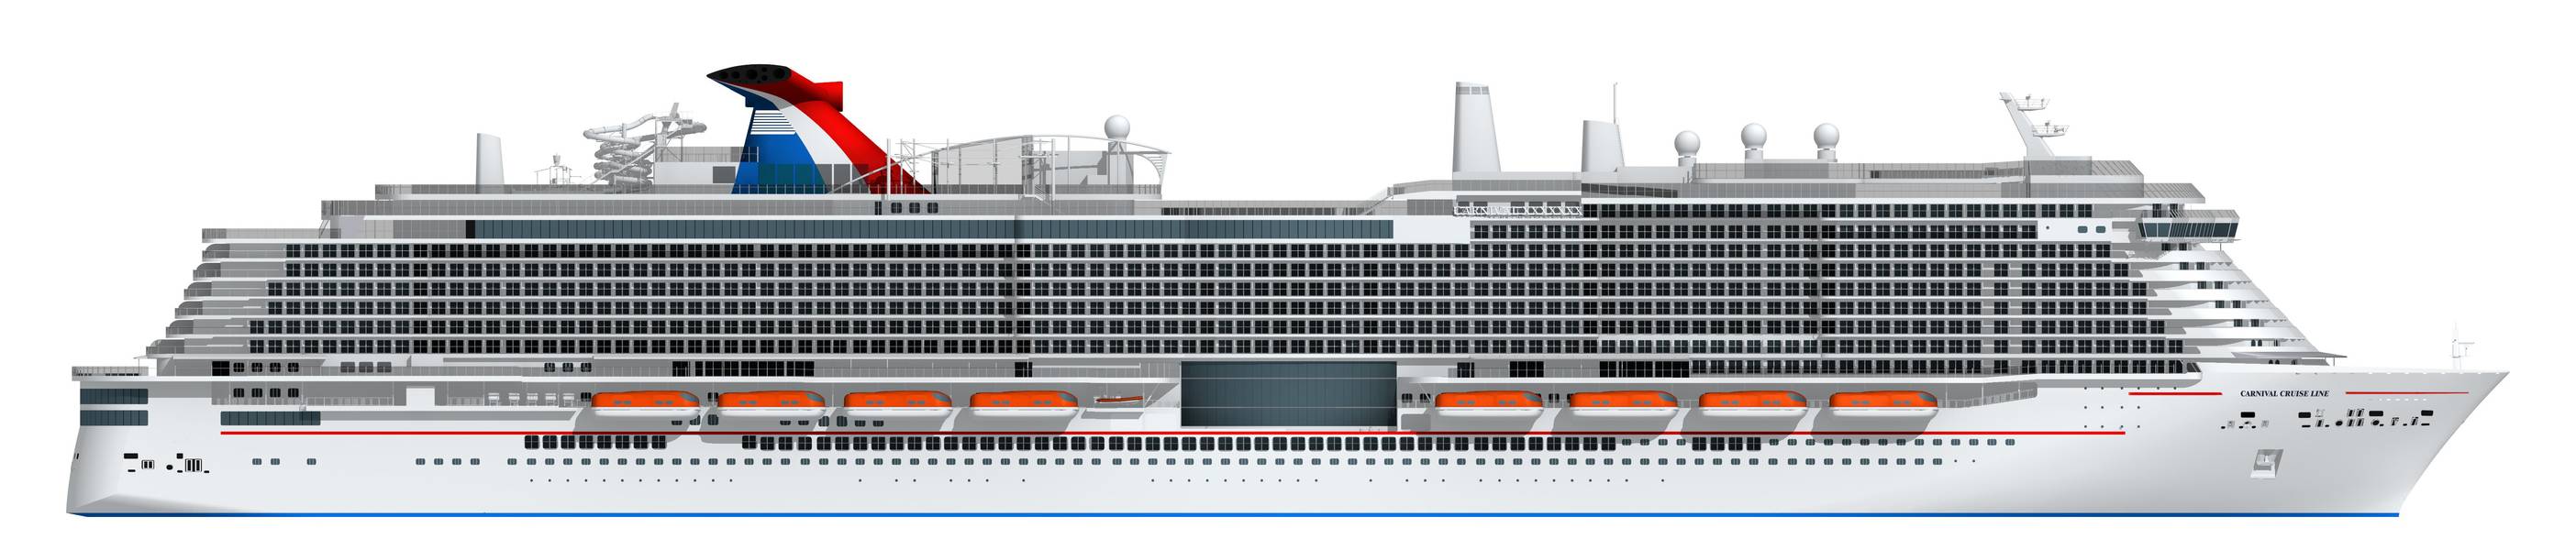 Η καλλιτεχνική απόδοση του νέου πλοίου 180.000 τόνων του Carnival που θα τροφοδοτείται με LNG (Image: Carnival Cruise Line)